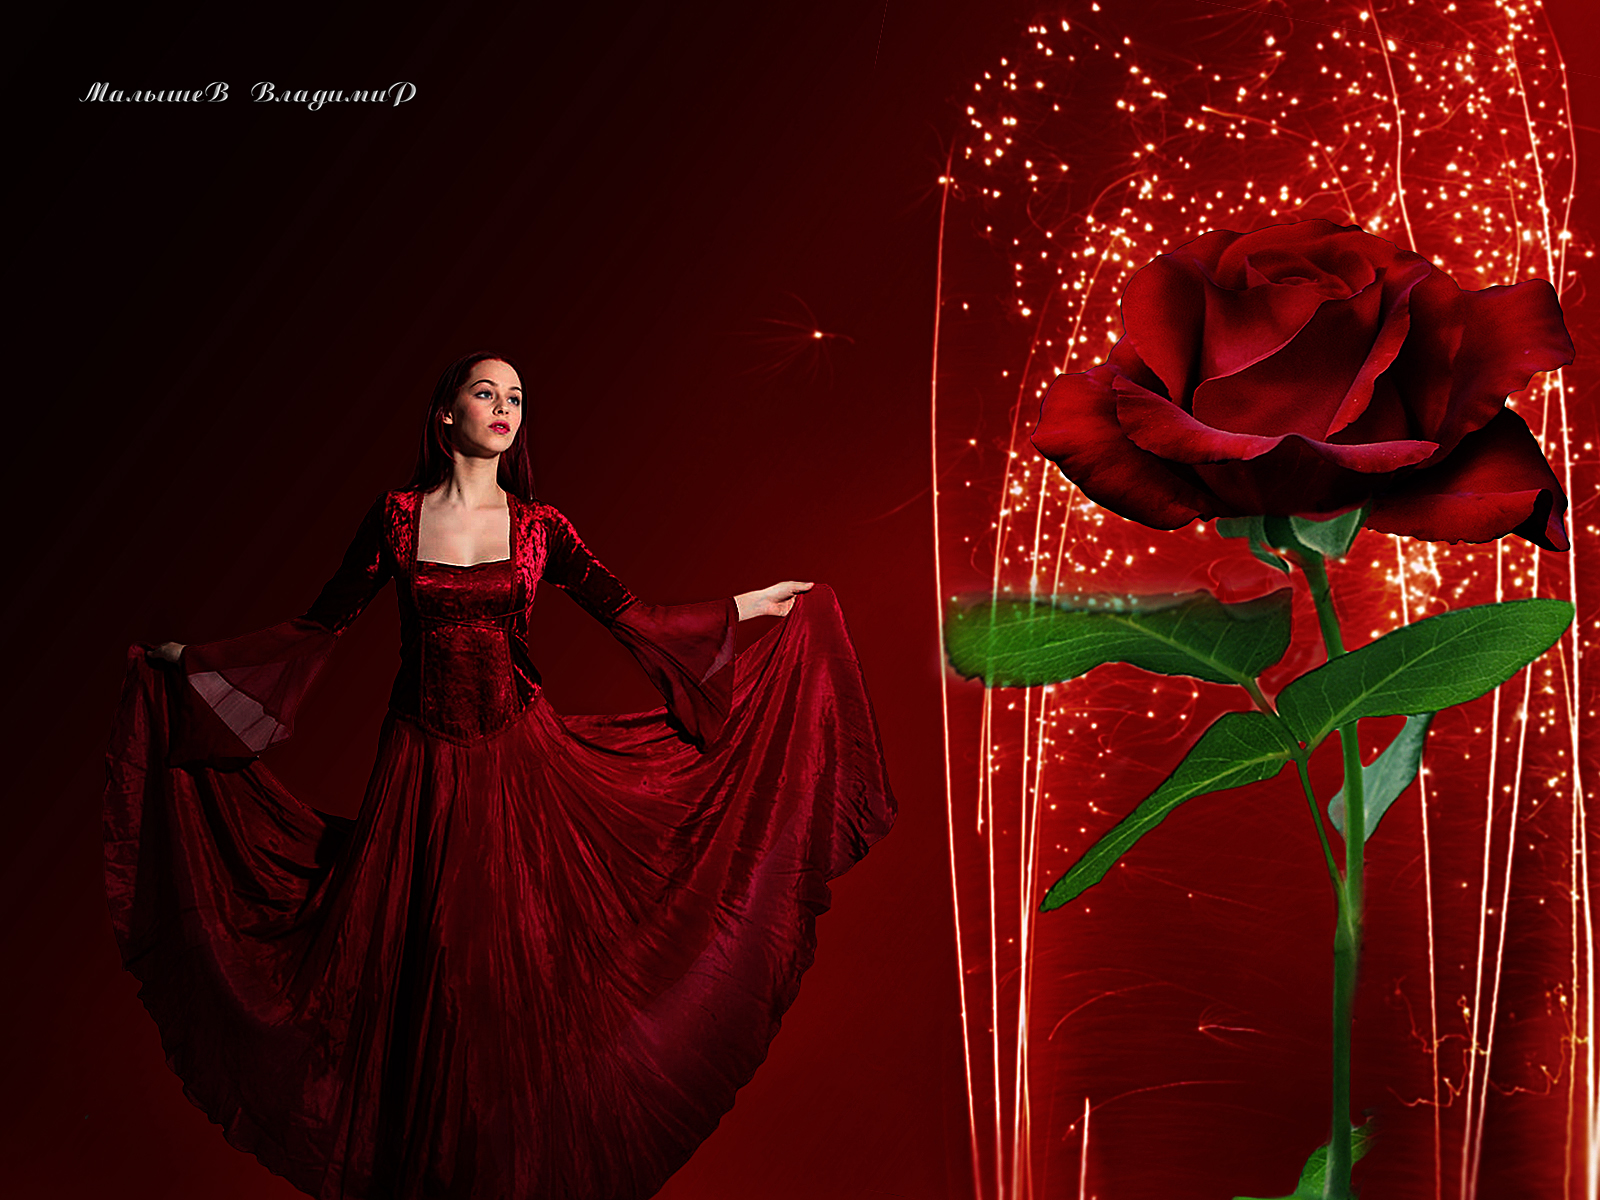 Фото На красно-бордовом фоне, девушка в красном платье смотрит на красную розу, за которой свети фейерверк